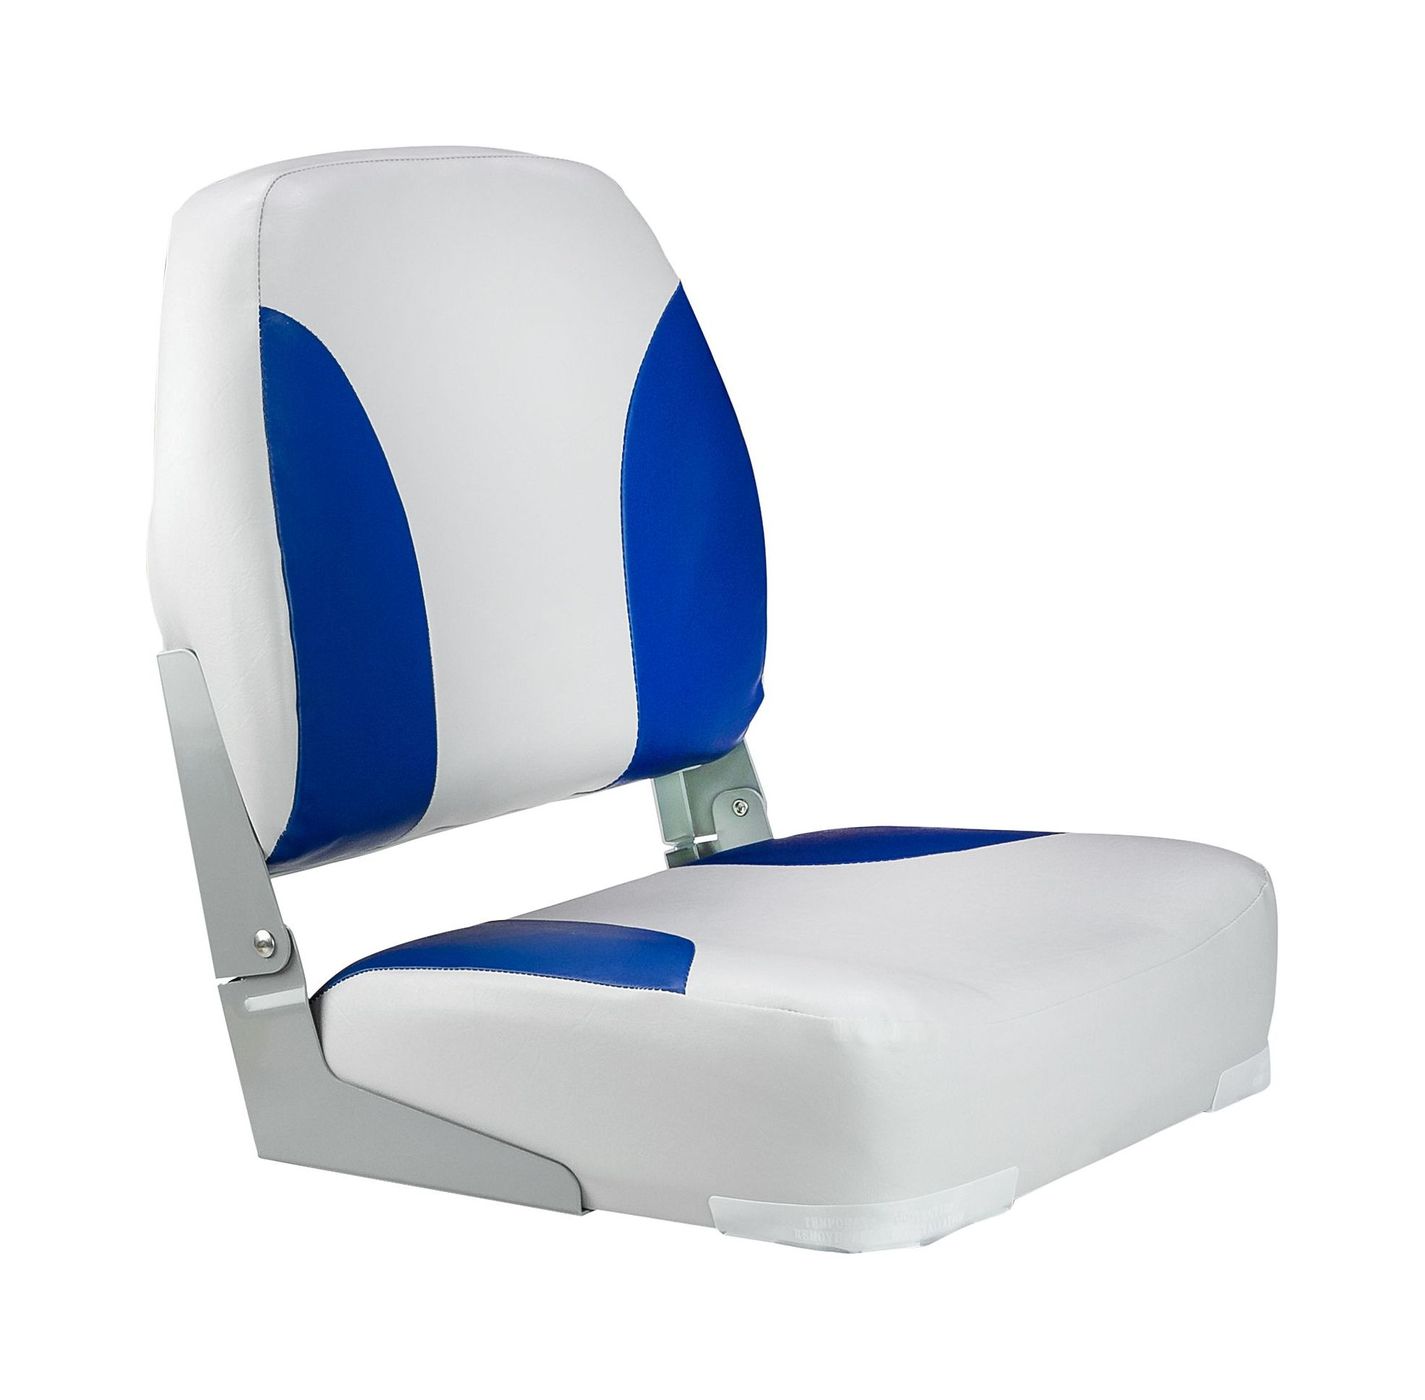 Кресло мягкое складное Classic, обивка винил, цвет серый/синий, Marine Rocket 75102GB-MR кресло мягкое deluxe sport с откидным валиком белый синий 1043251